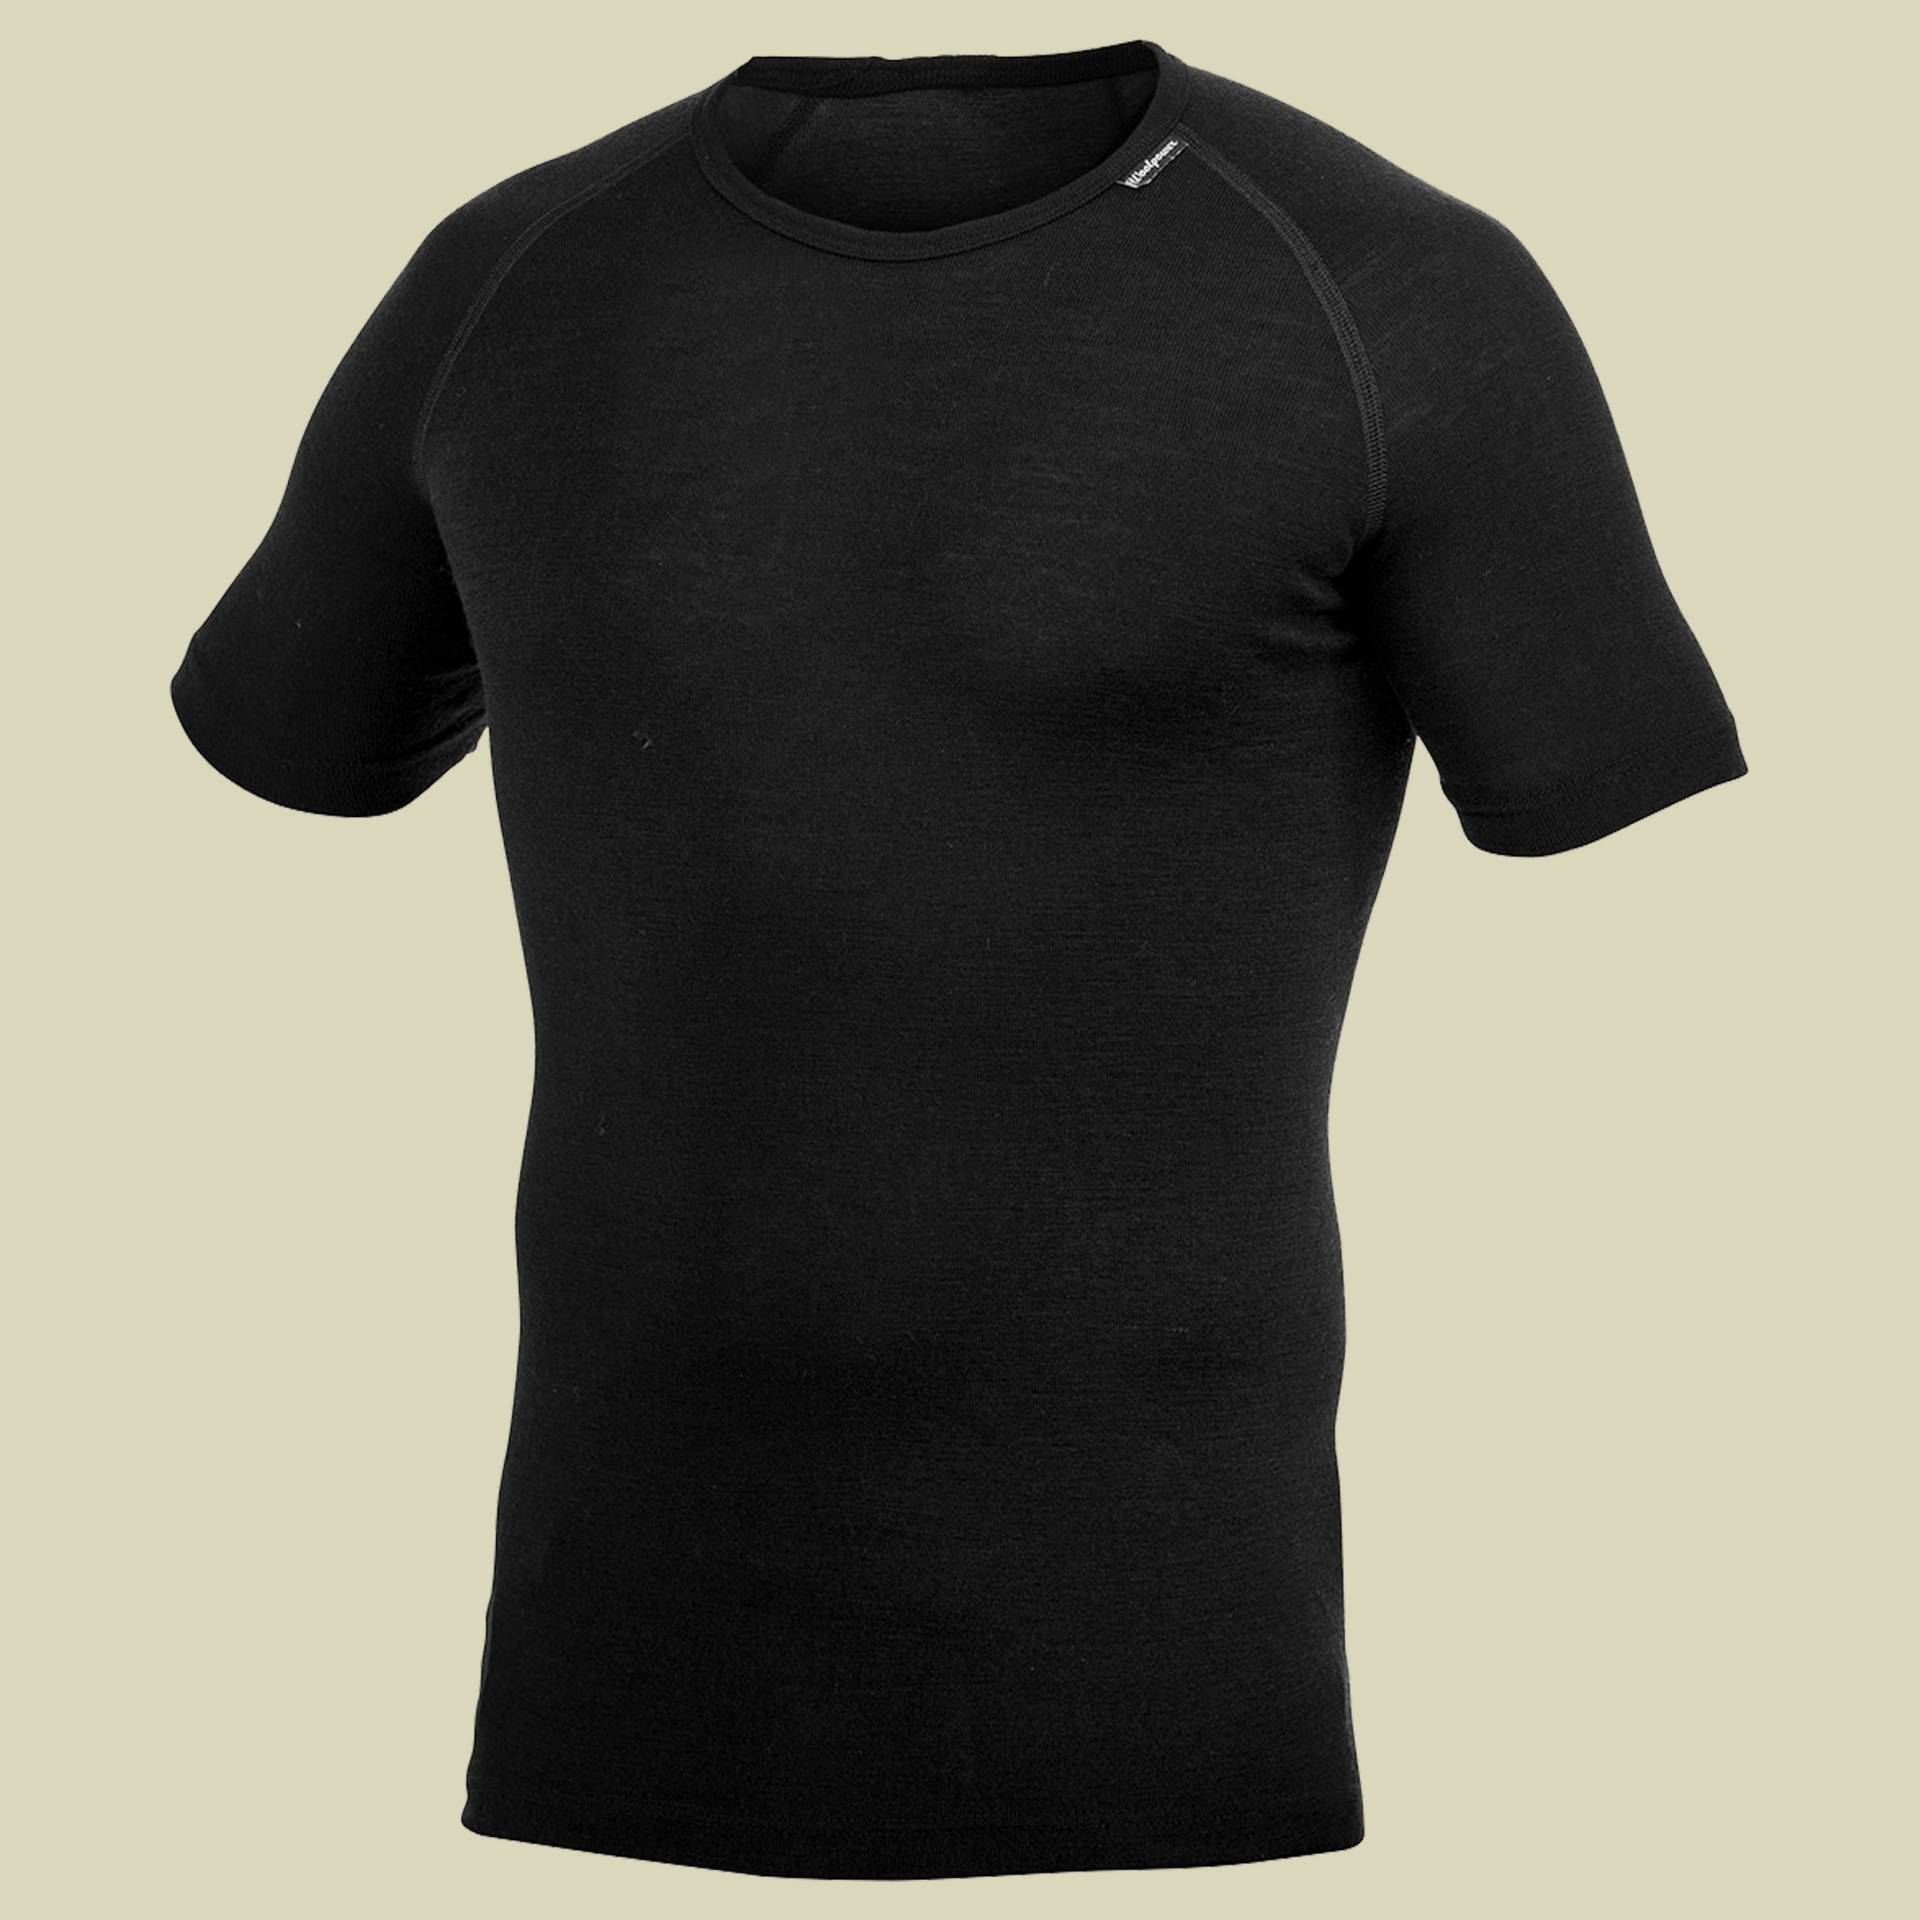 Lite T-Shirt M schwarz - Farbe black von Woolpower